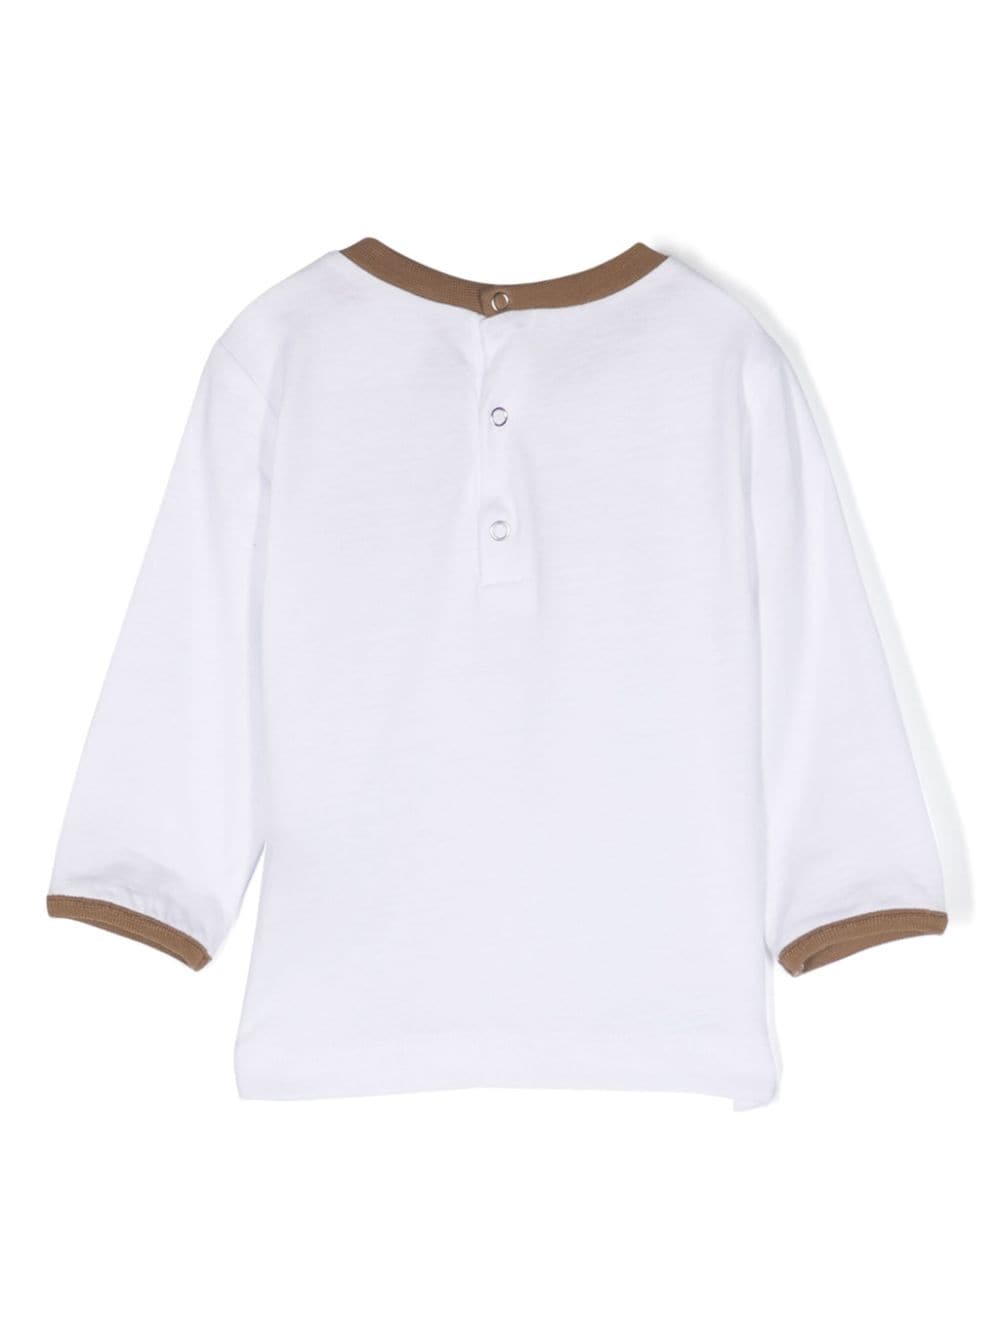 T-shirt bianca neonato